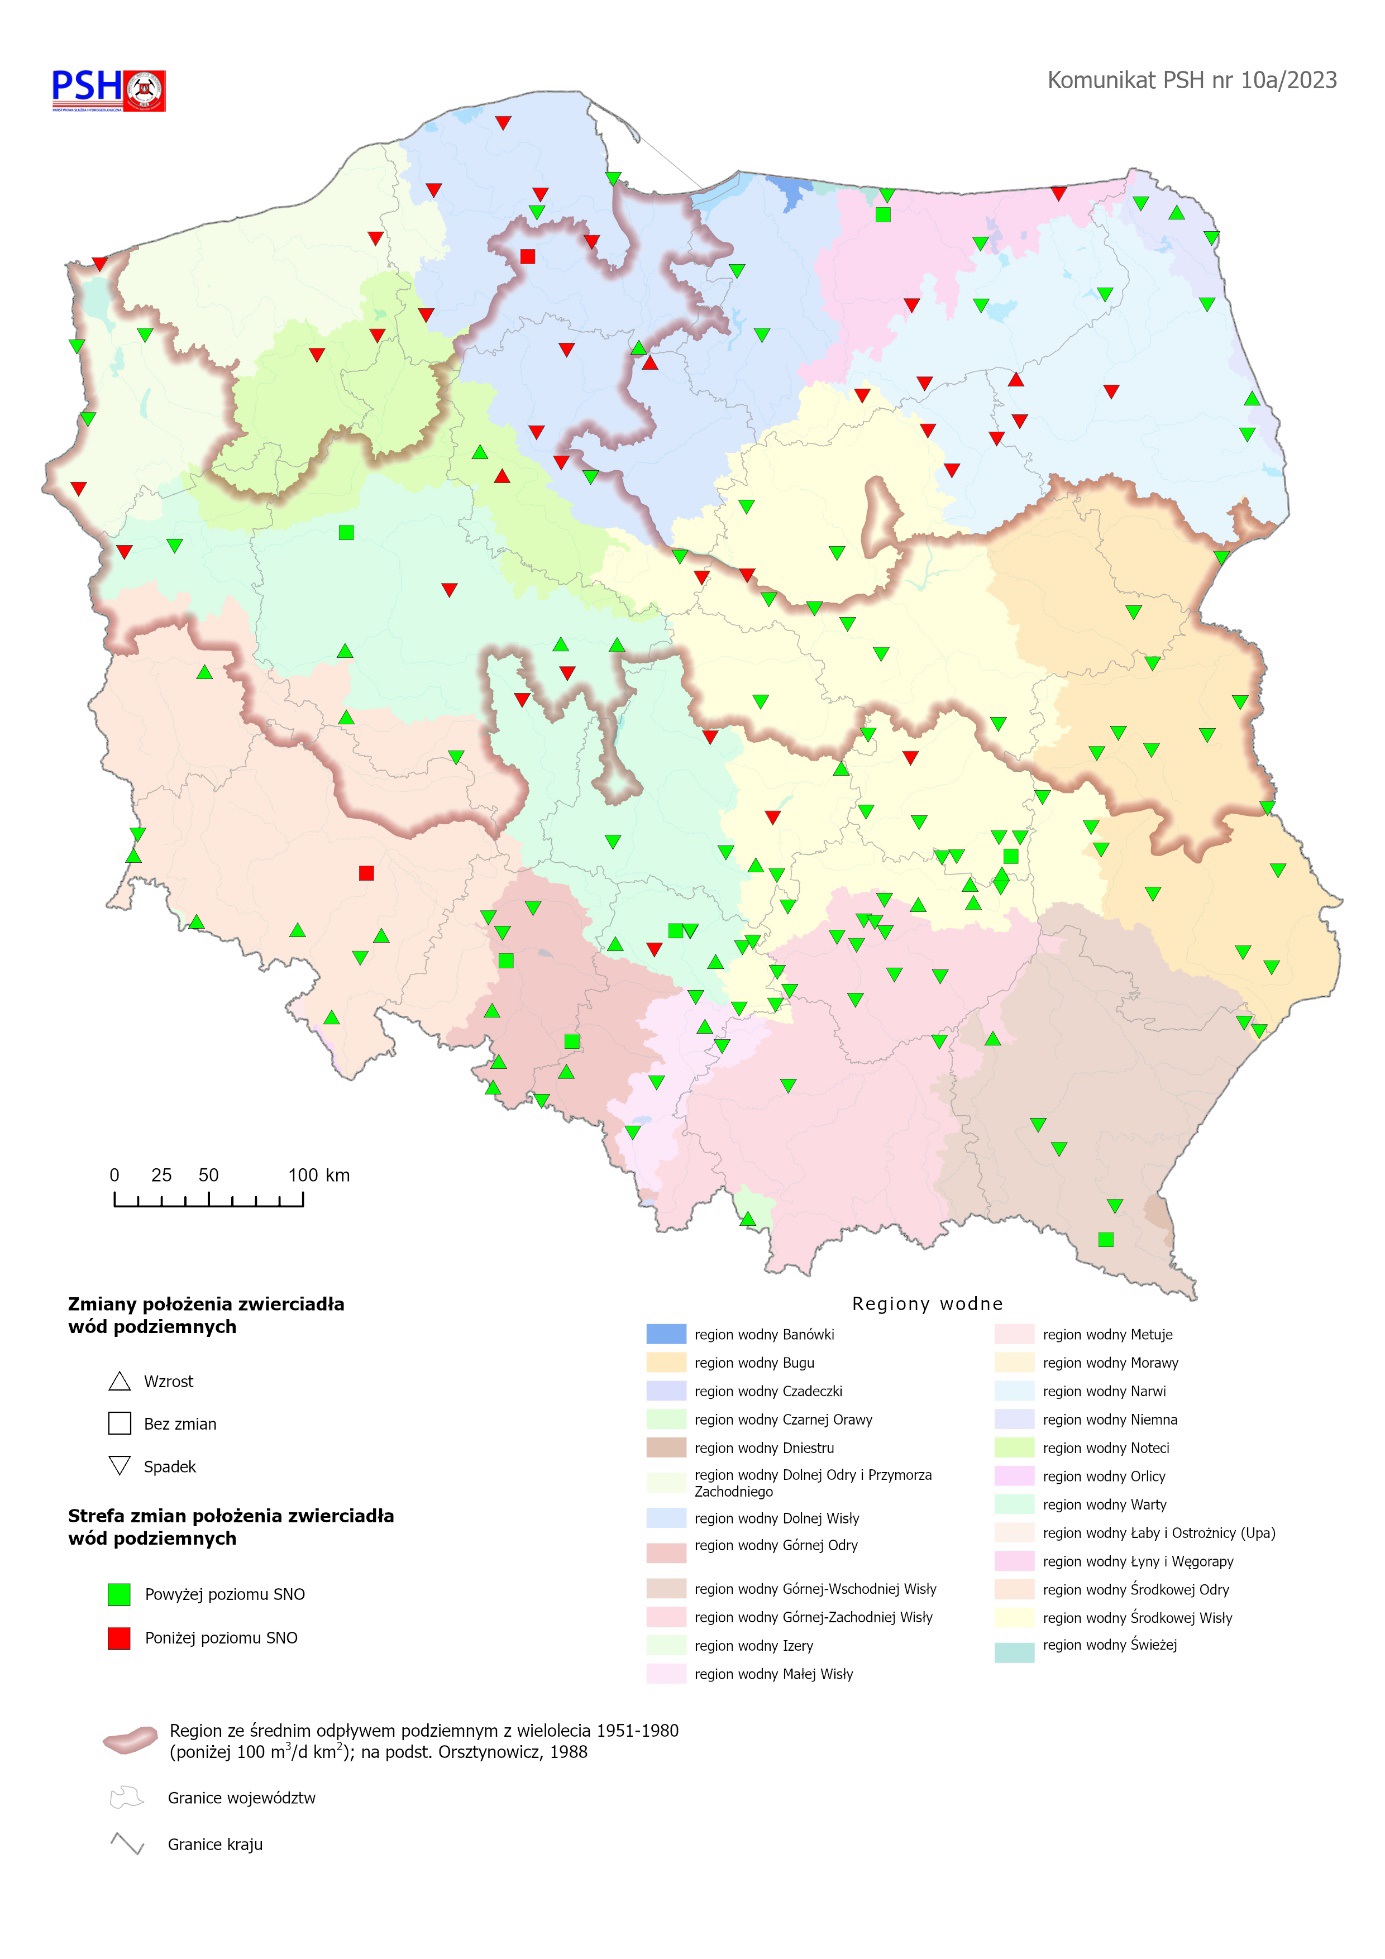 Ilustracja, mapa Polski z zaznaczonymi punktami ze zmianą położenia zwierciadła wody podziemnej w objętych analizą punktach sieci obserwacyjno-badawczej wód podziemnych we wrześniu 2023 r.